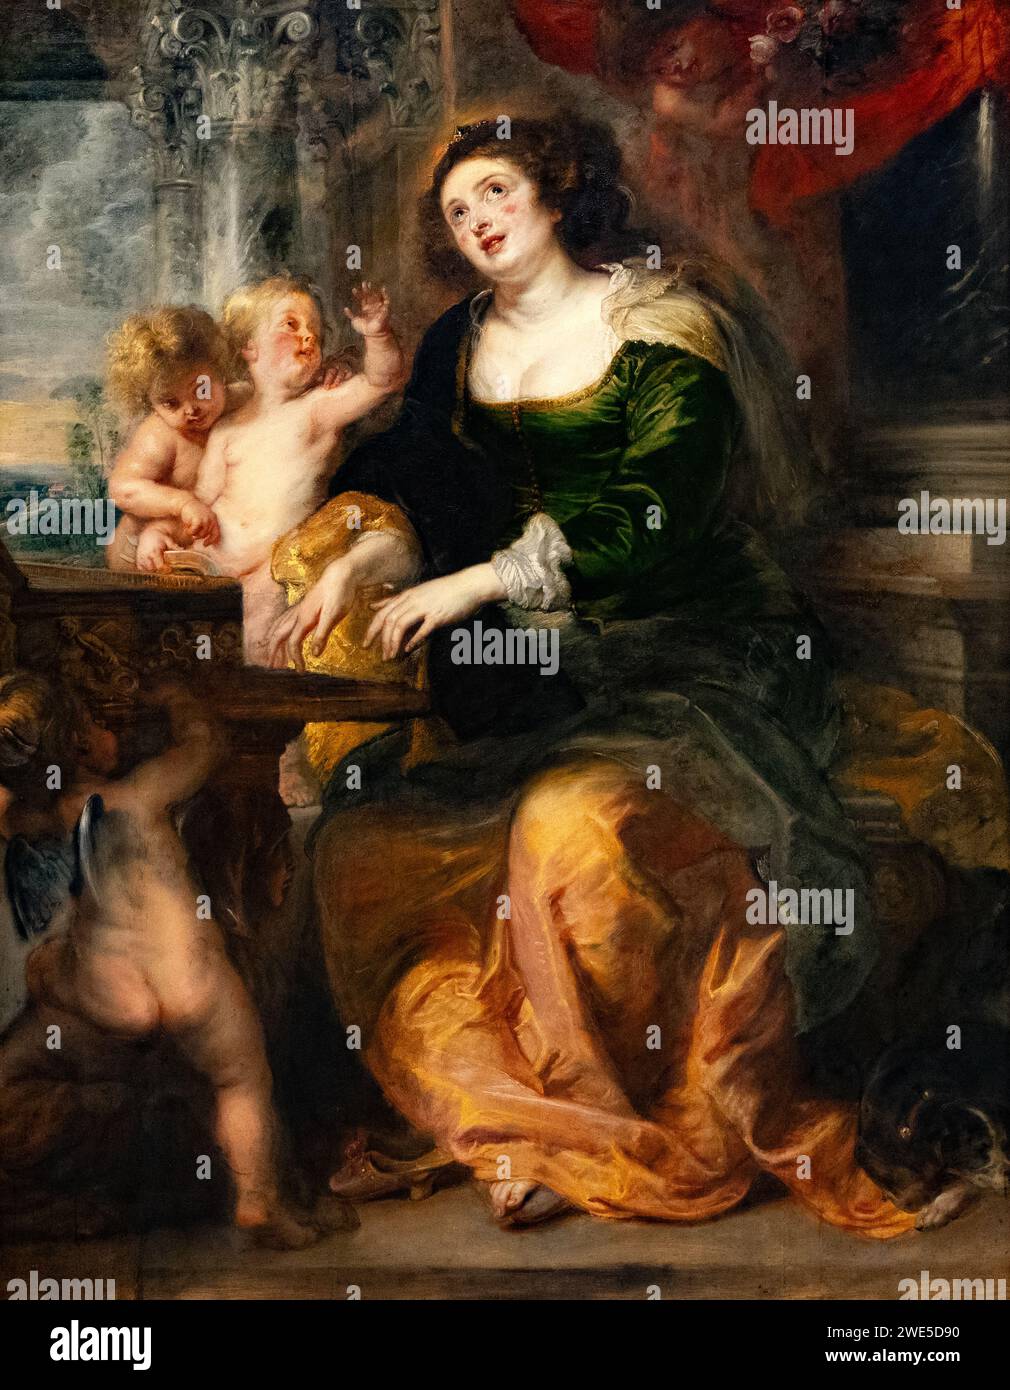 Pierre Paul Rubens peinture, 'Sainte Cecilia' ou 'St. Cecilia', 1639-40, saint patron de la musique d'église. peintres flamands du 17e siècle. Banque D'Images